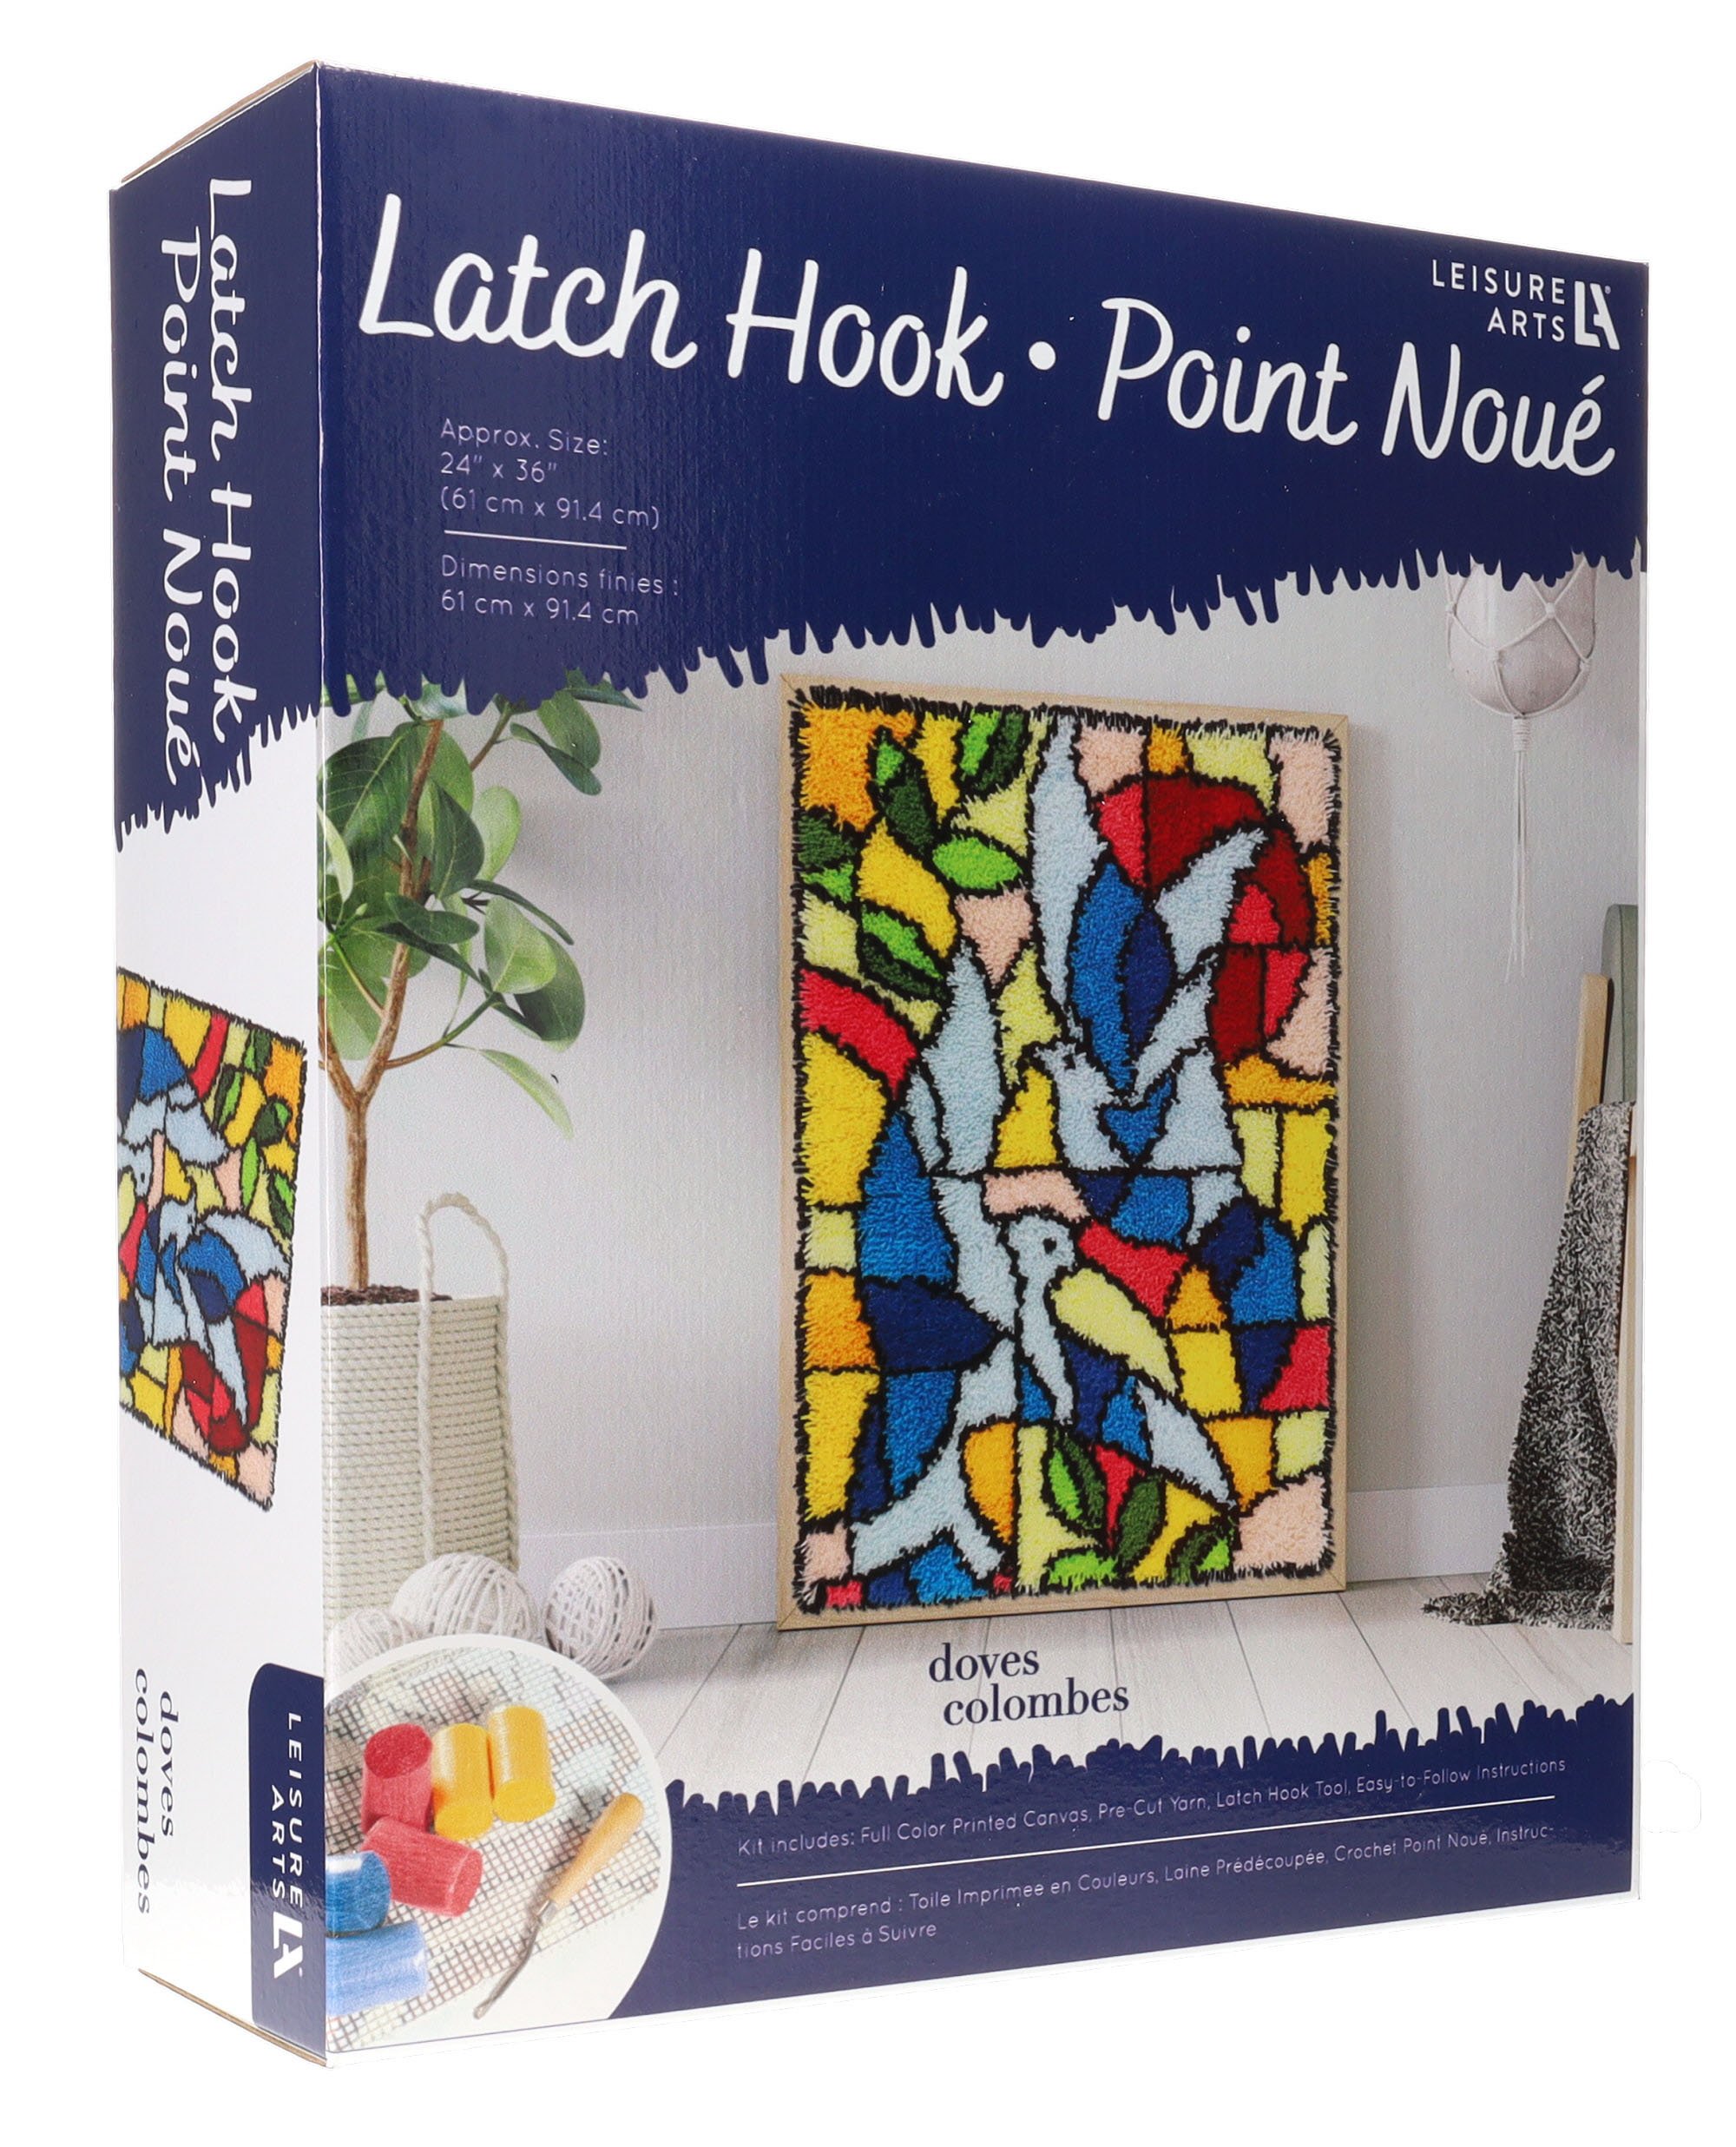 Leisure Arts Latch Hook Kit Leaves, 16, Latch Hook Kit, Latch Hook Rug  Kits, Rug Making Kit, Latch Hook Kits for Adults, Latch Hook Kits for Adults  Beginners